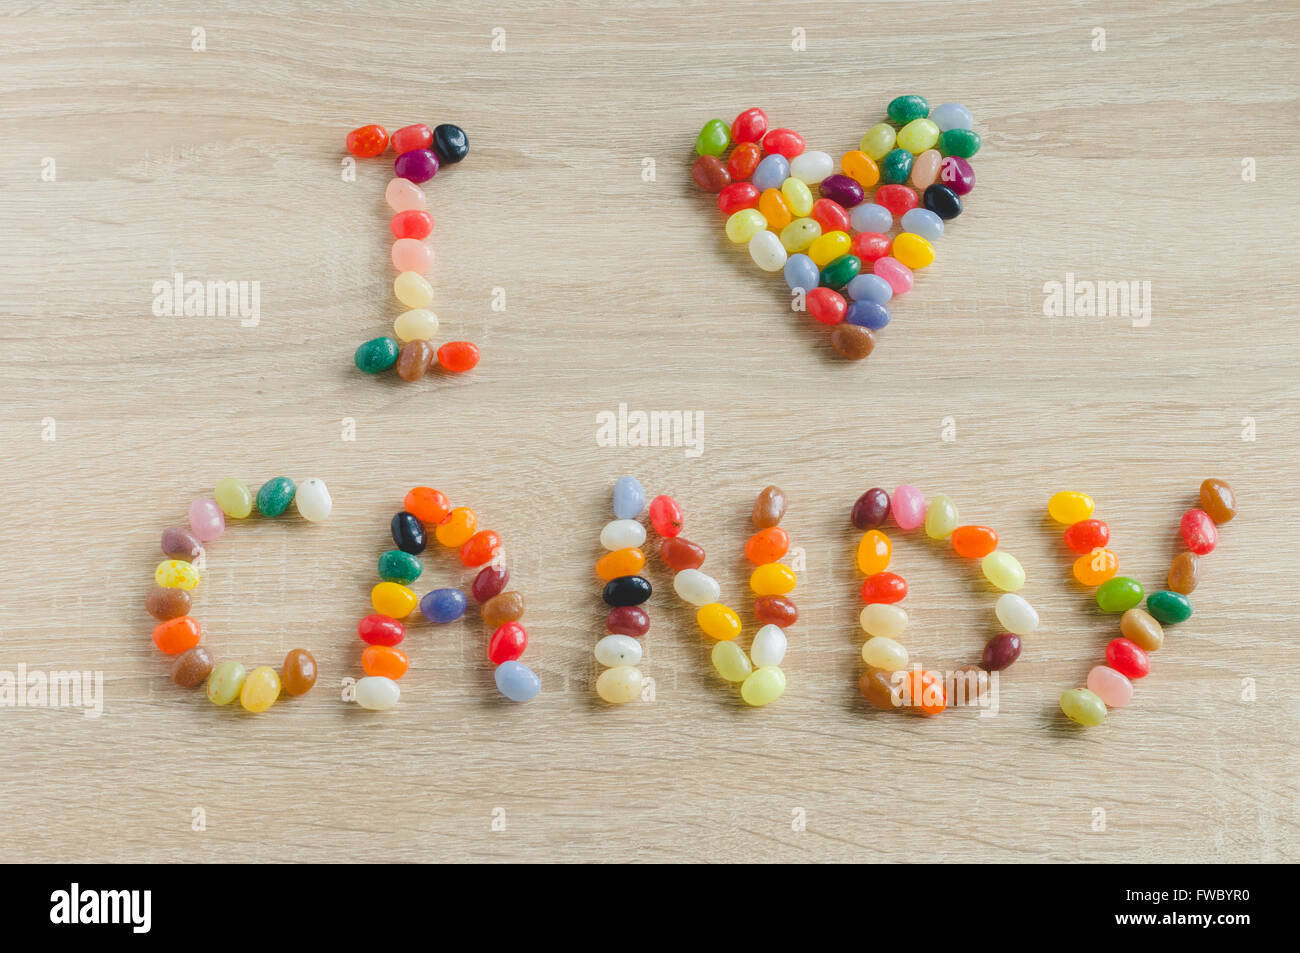 Amare le caramelle immagini e fotografie stock ad alta risoluzione - Alamy